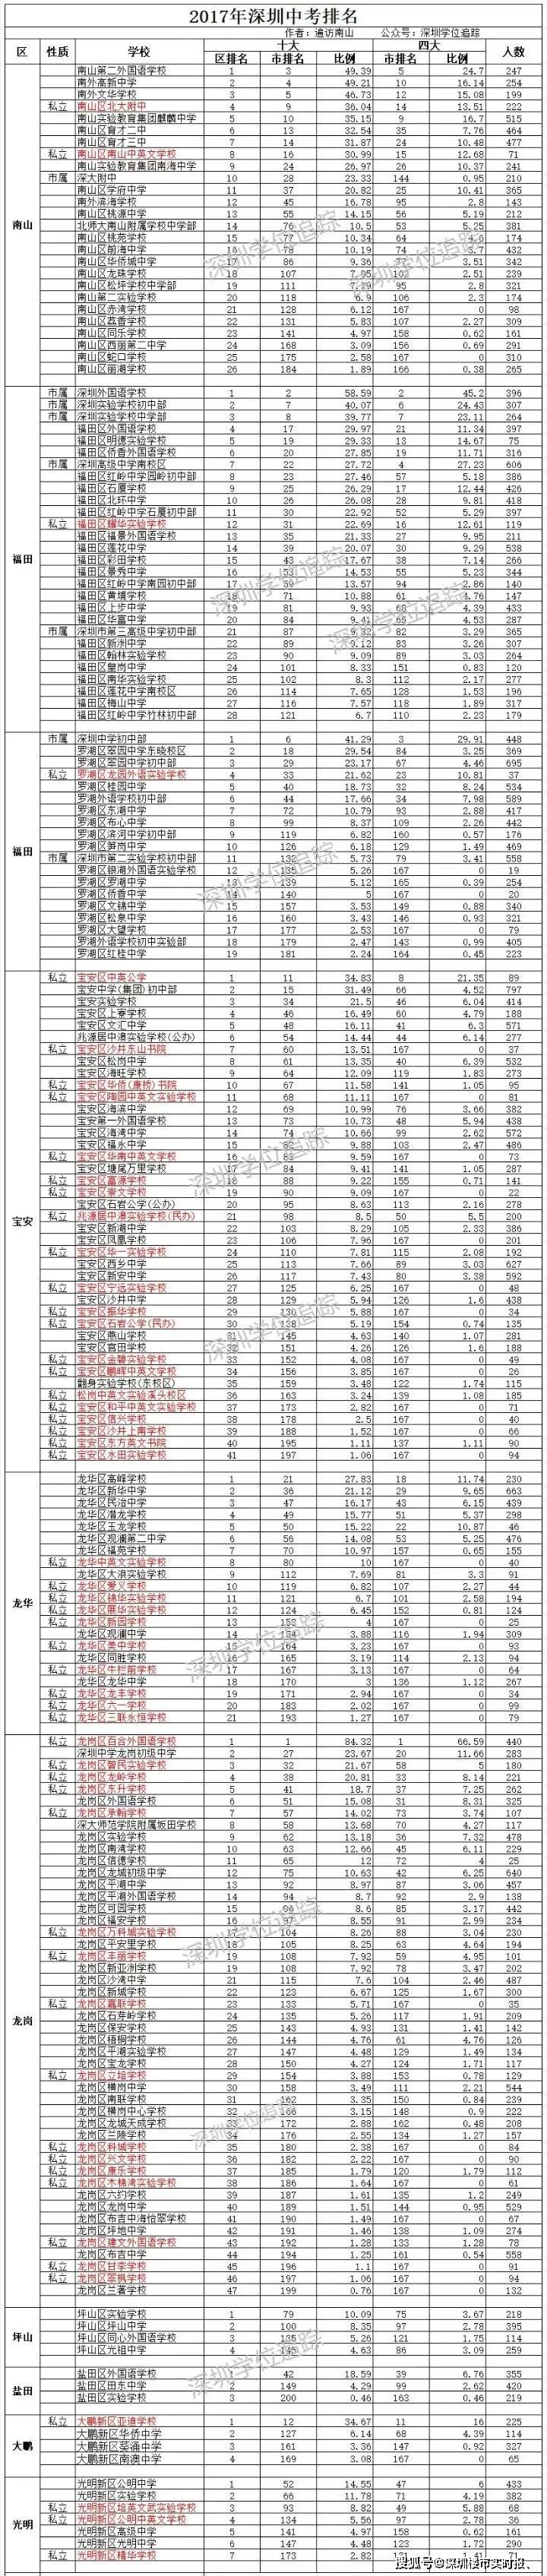 2020年庆安县中考排名_庆安县高考期间道路交通管制通告、考场平面示意图